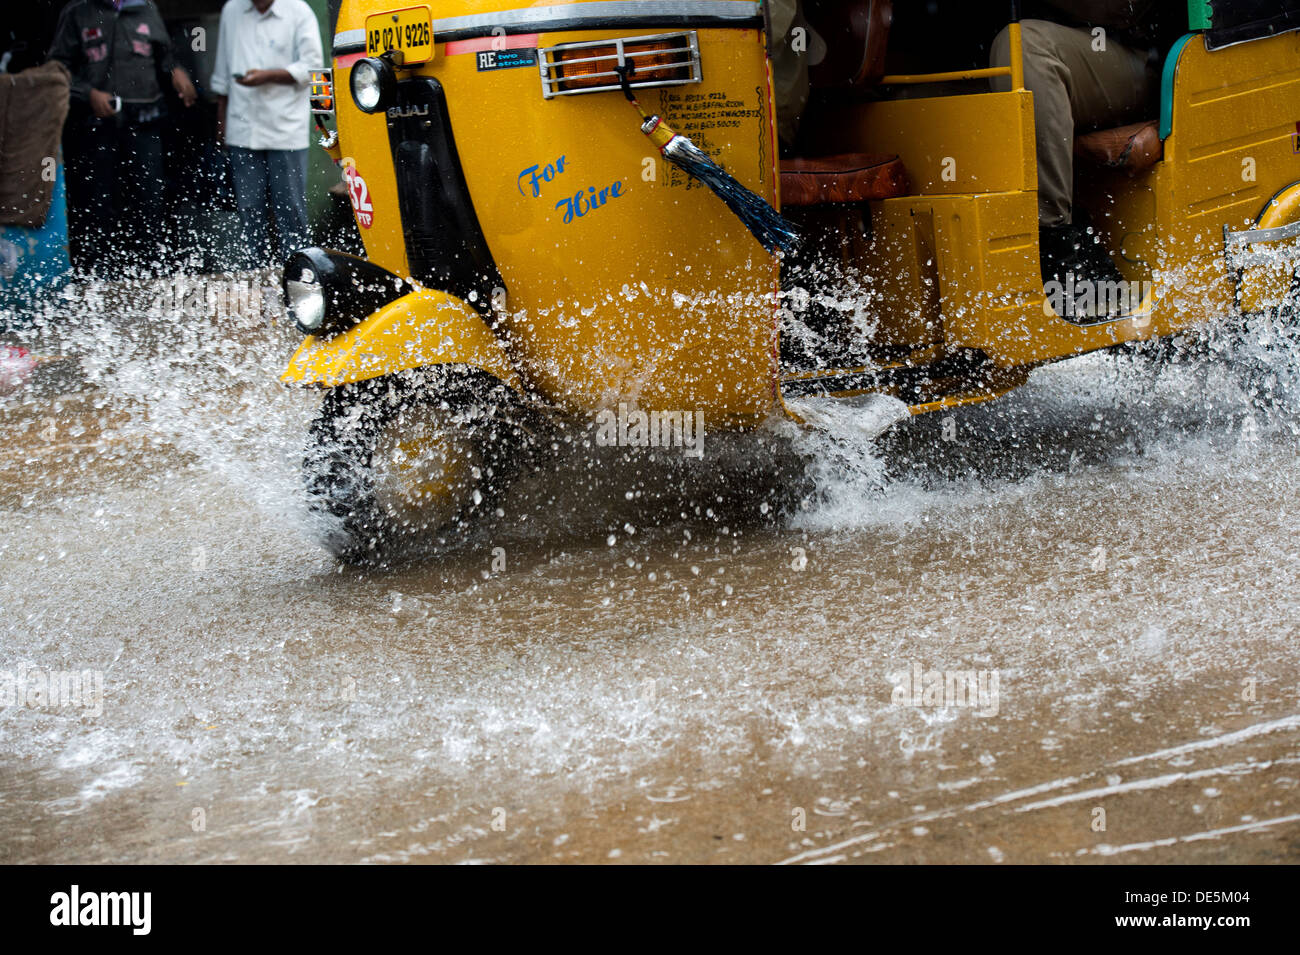 Indische Auto-Rikschas fahren durch nasse Straßen in Puttaparthi, Andhra Pradesh, Indien Stockfoto